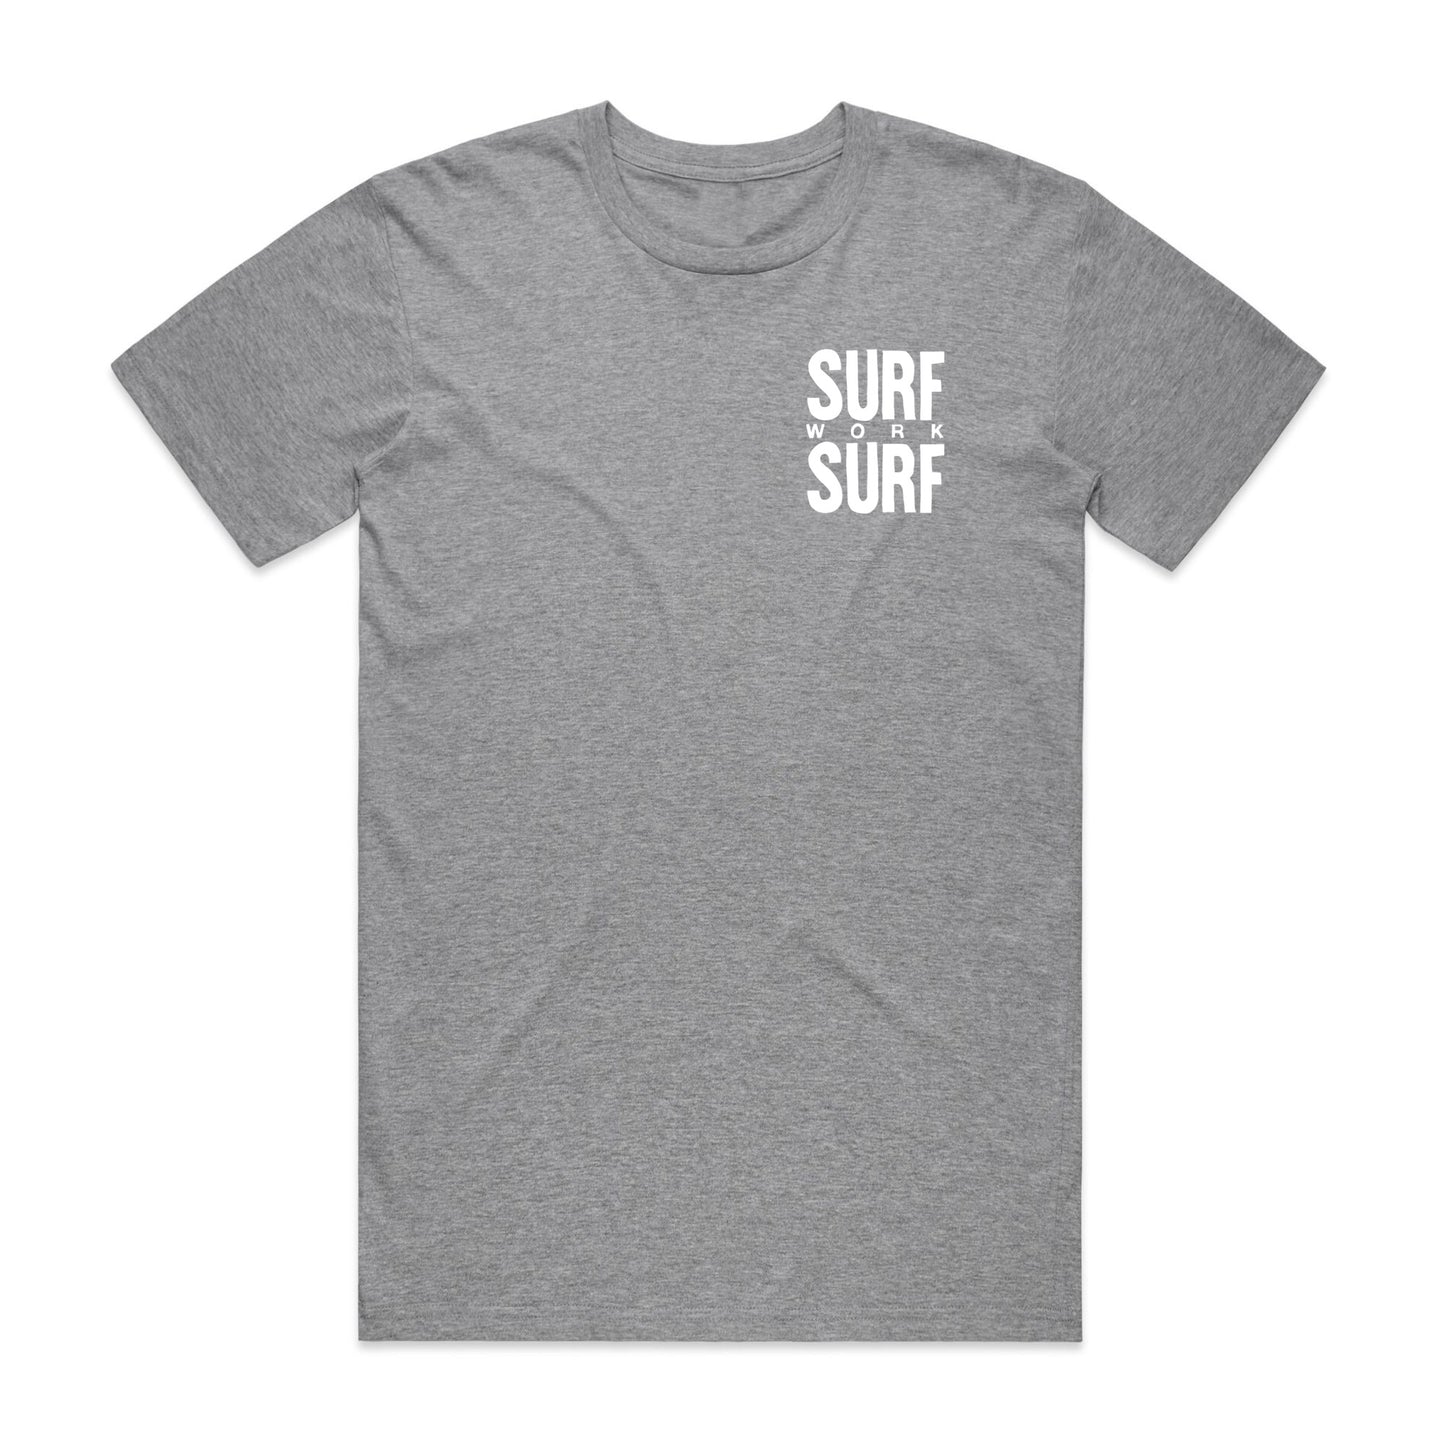 SURF work SURF